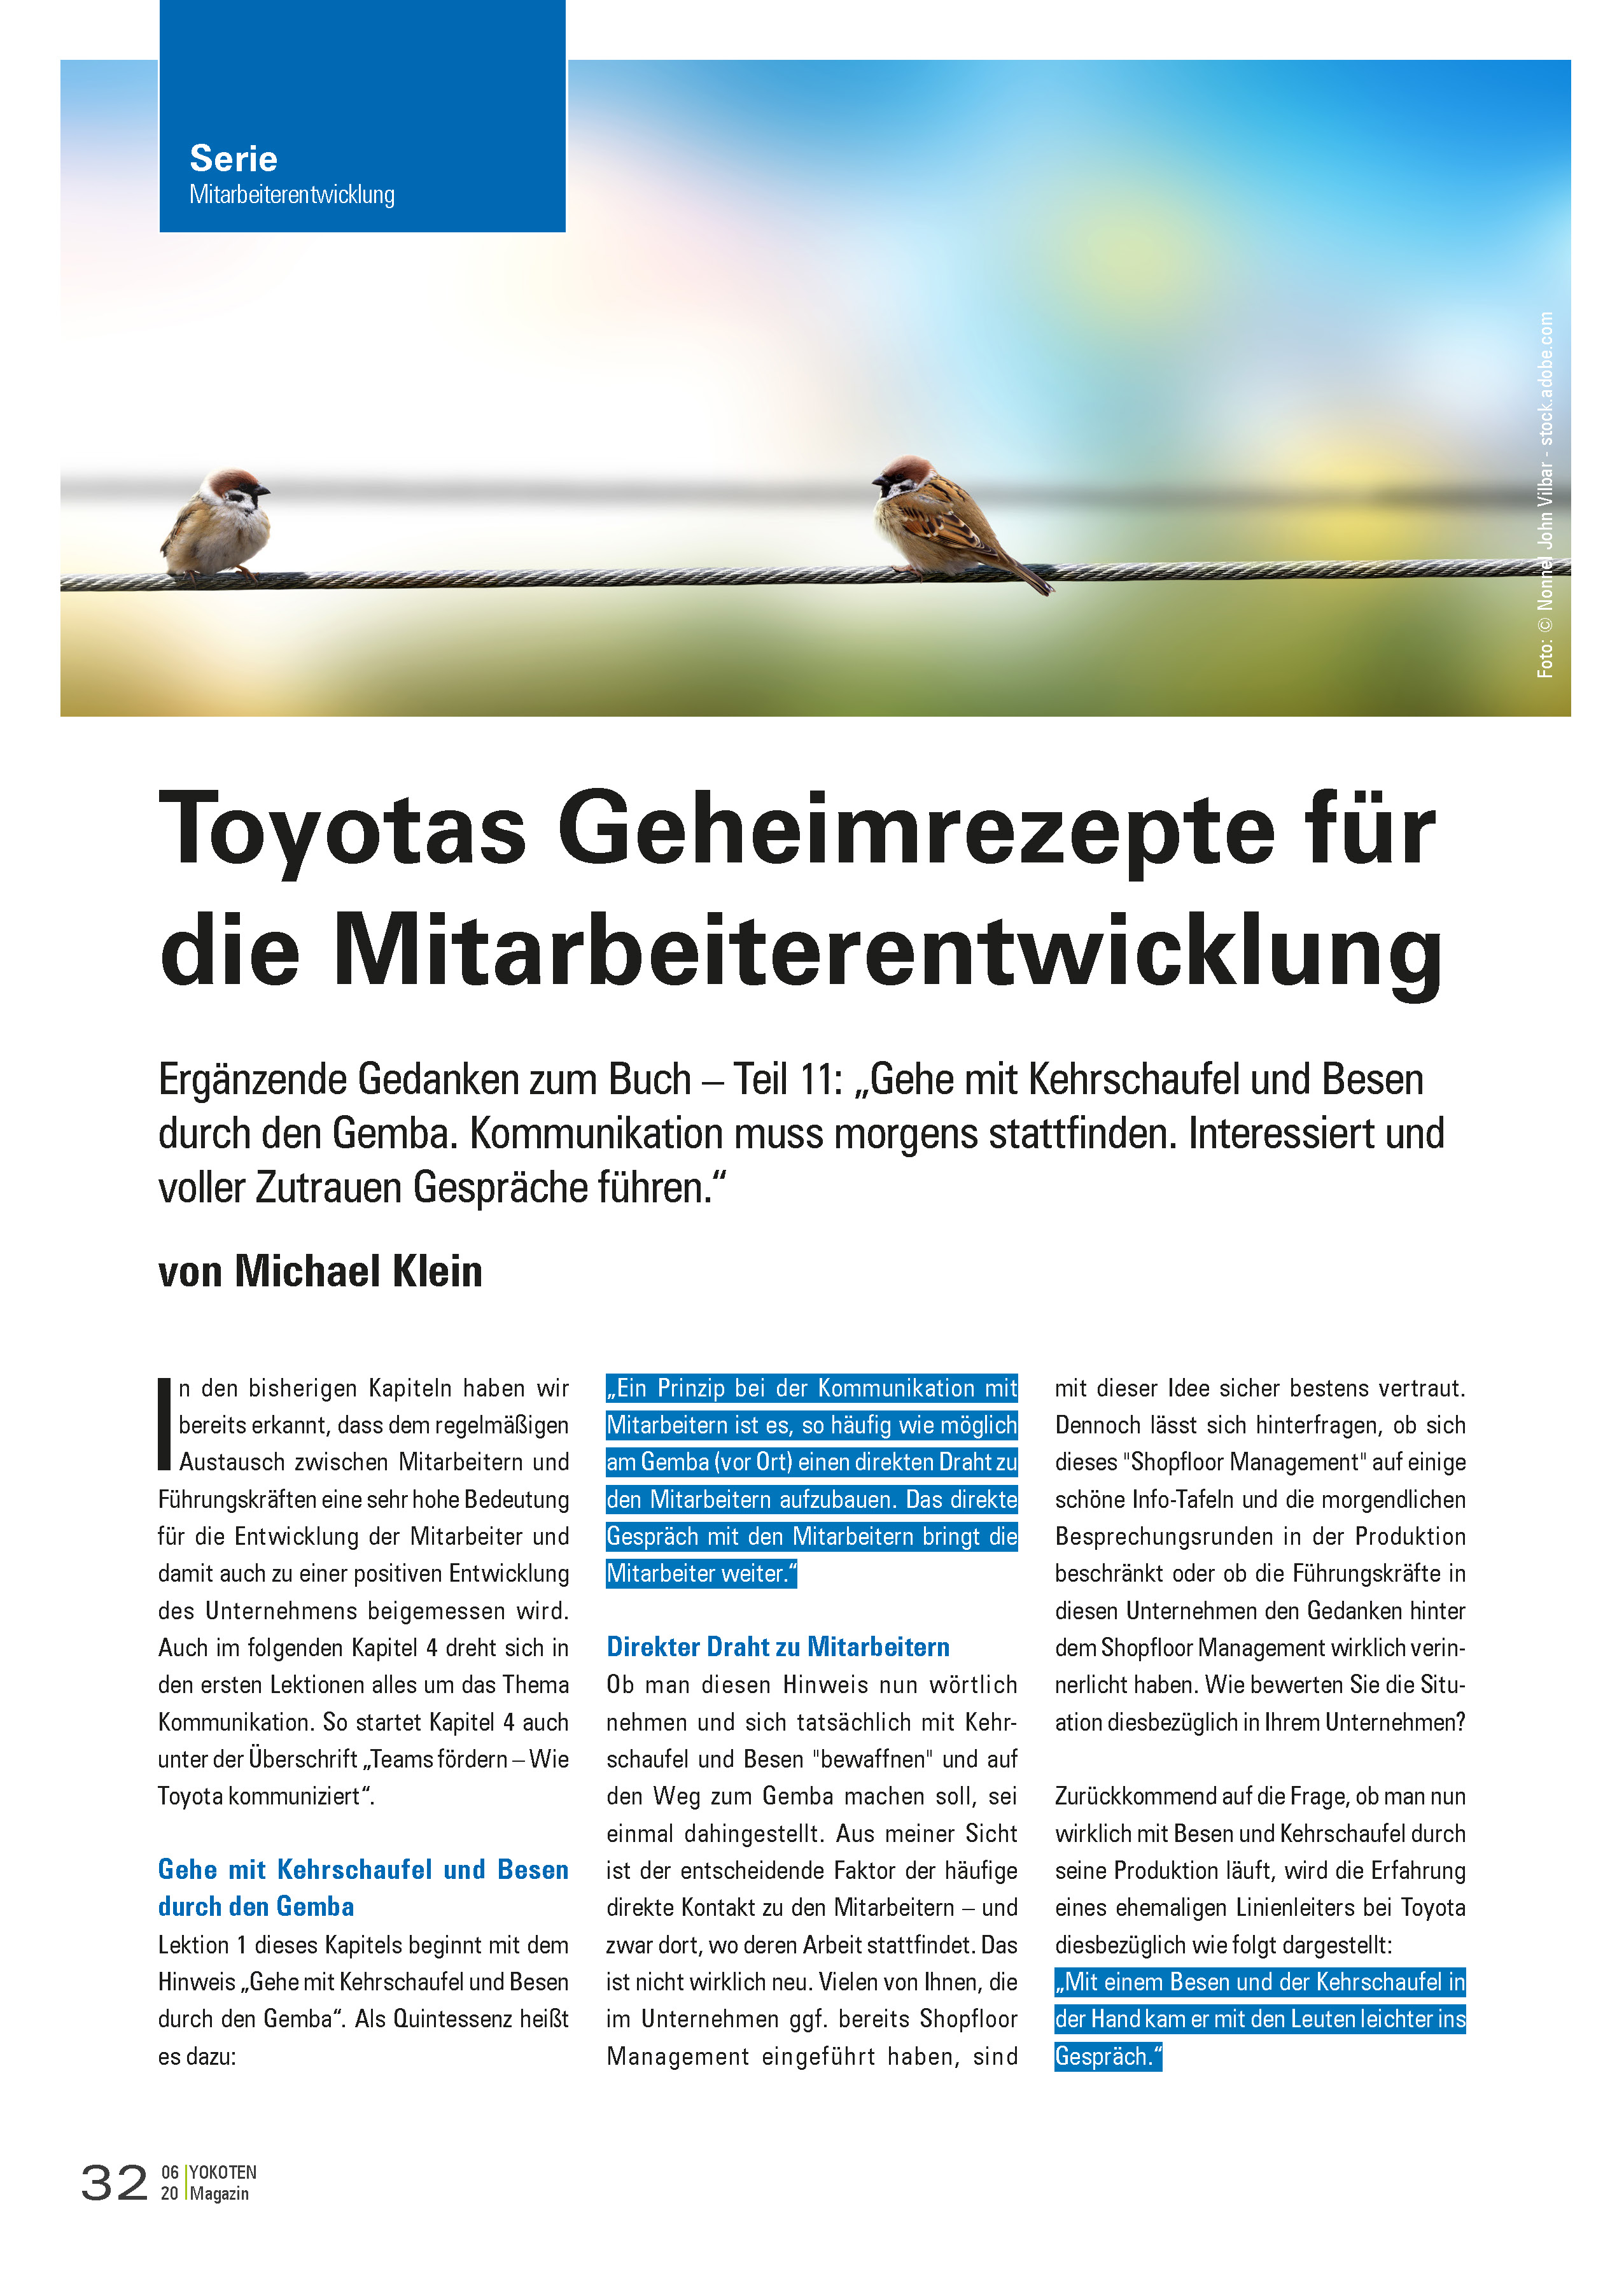 Toyotas Geheimrezepte für die Mitarbeiterentwicklung - Artikel aus Fachmagazin YOKOTEN 2020-06